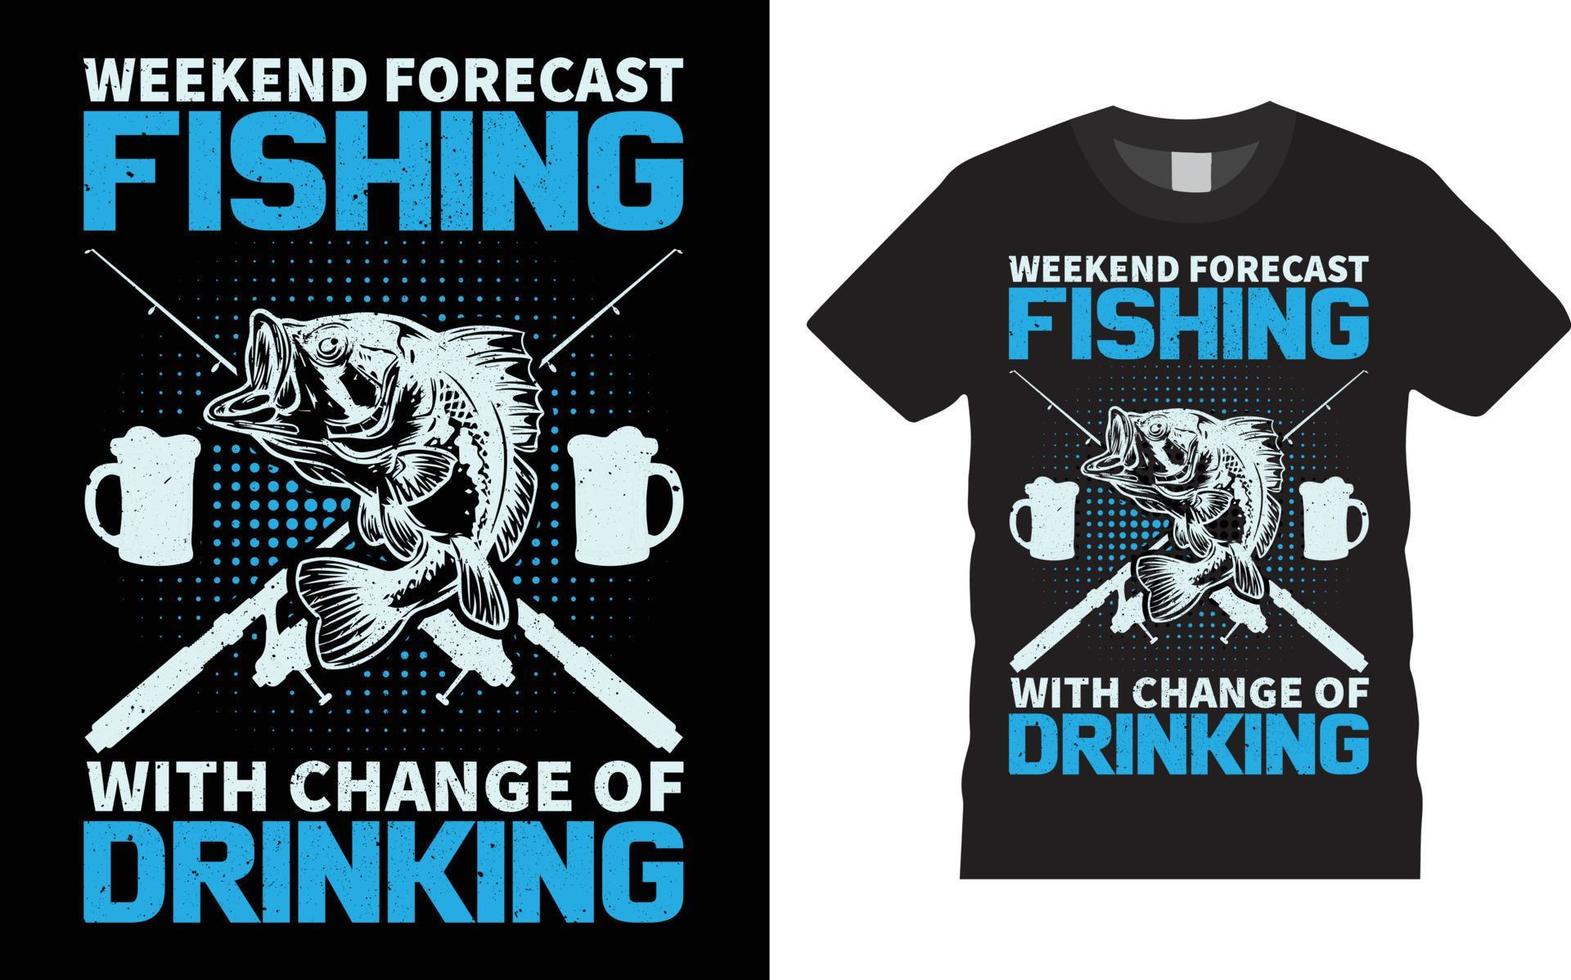 prévisions de week-end pêche avec une chance de boire un modèle de conception de t-shirt vectoriel de devis.